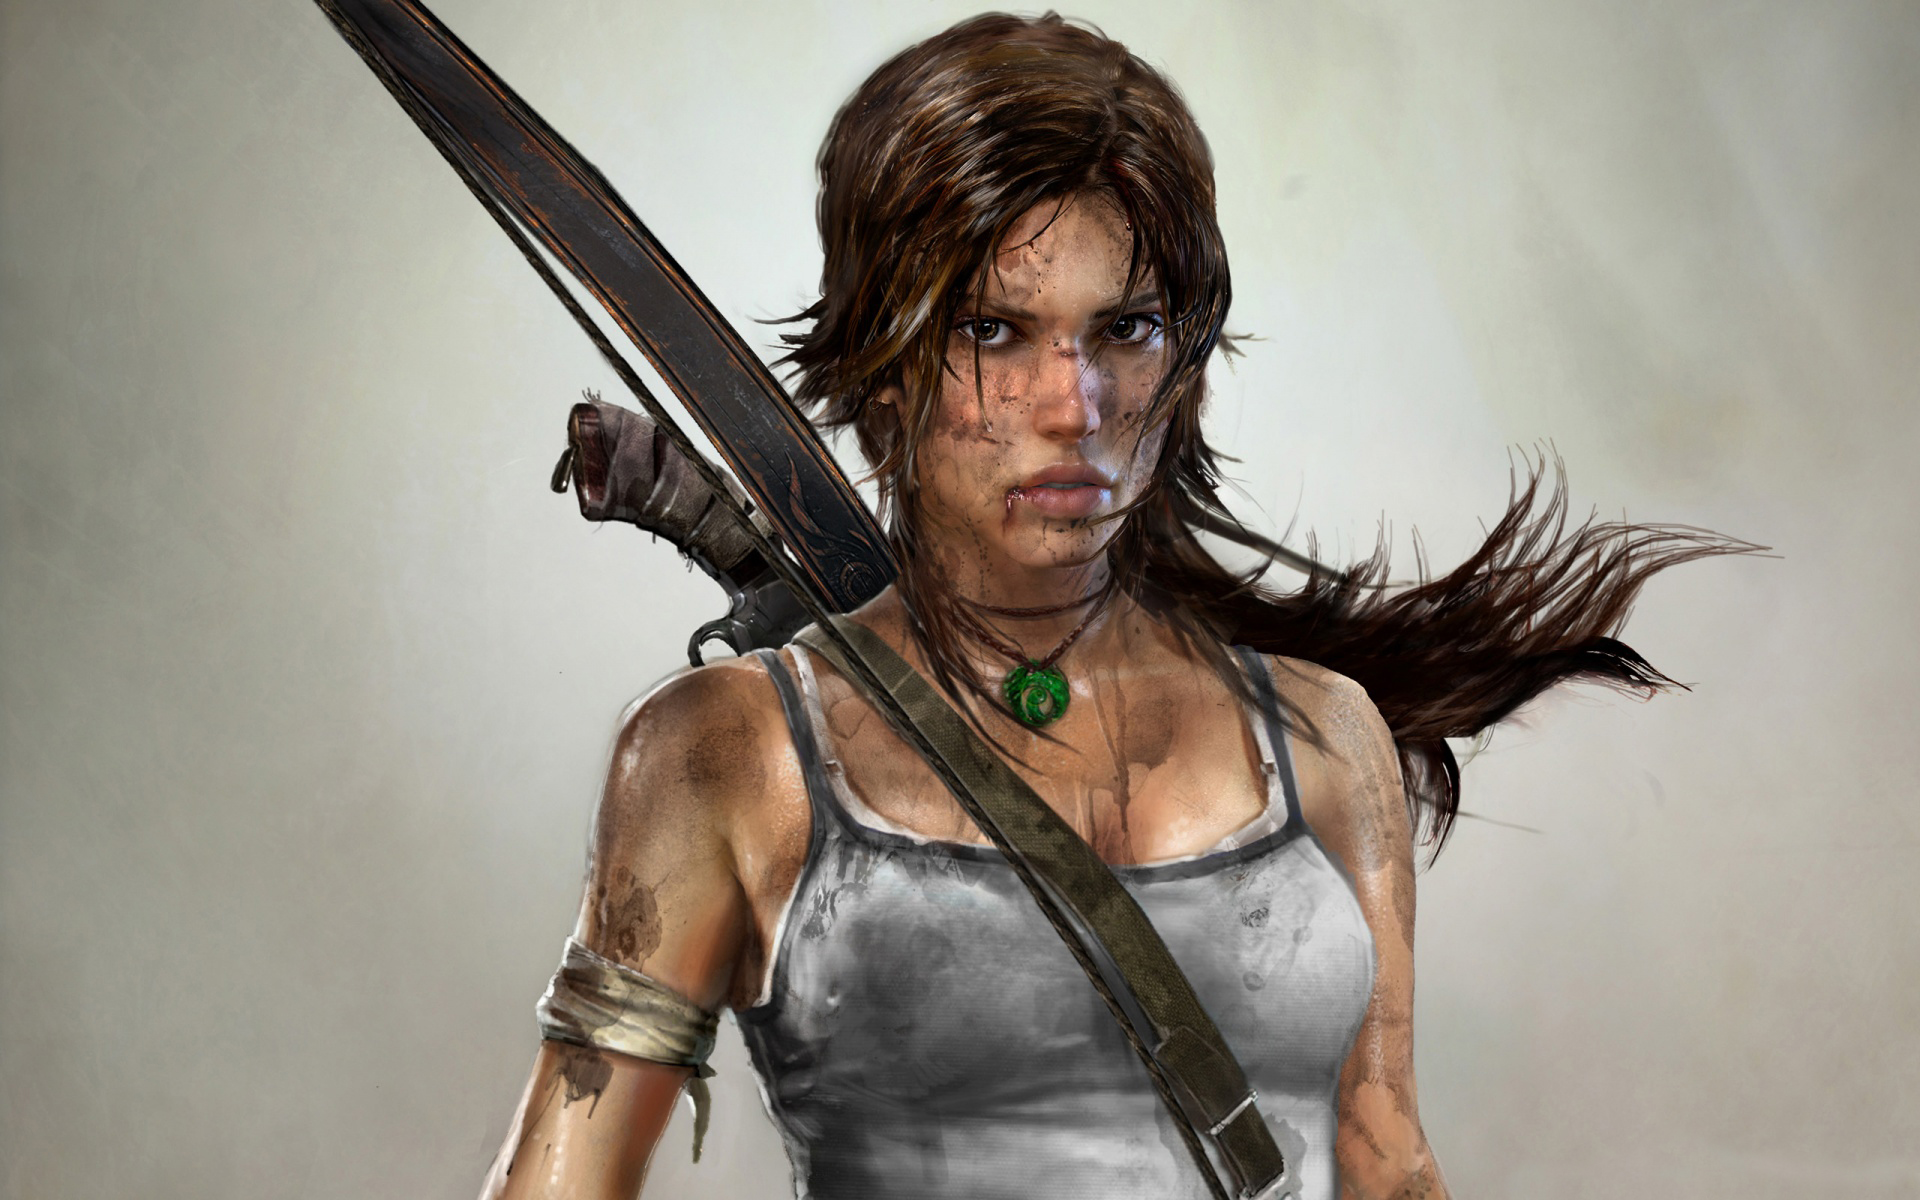 Lara Croft 01